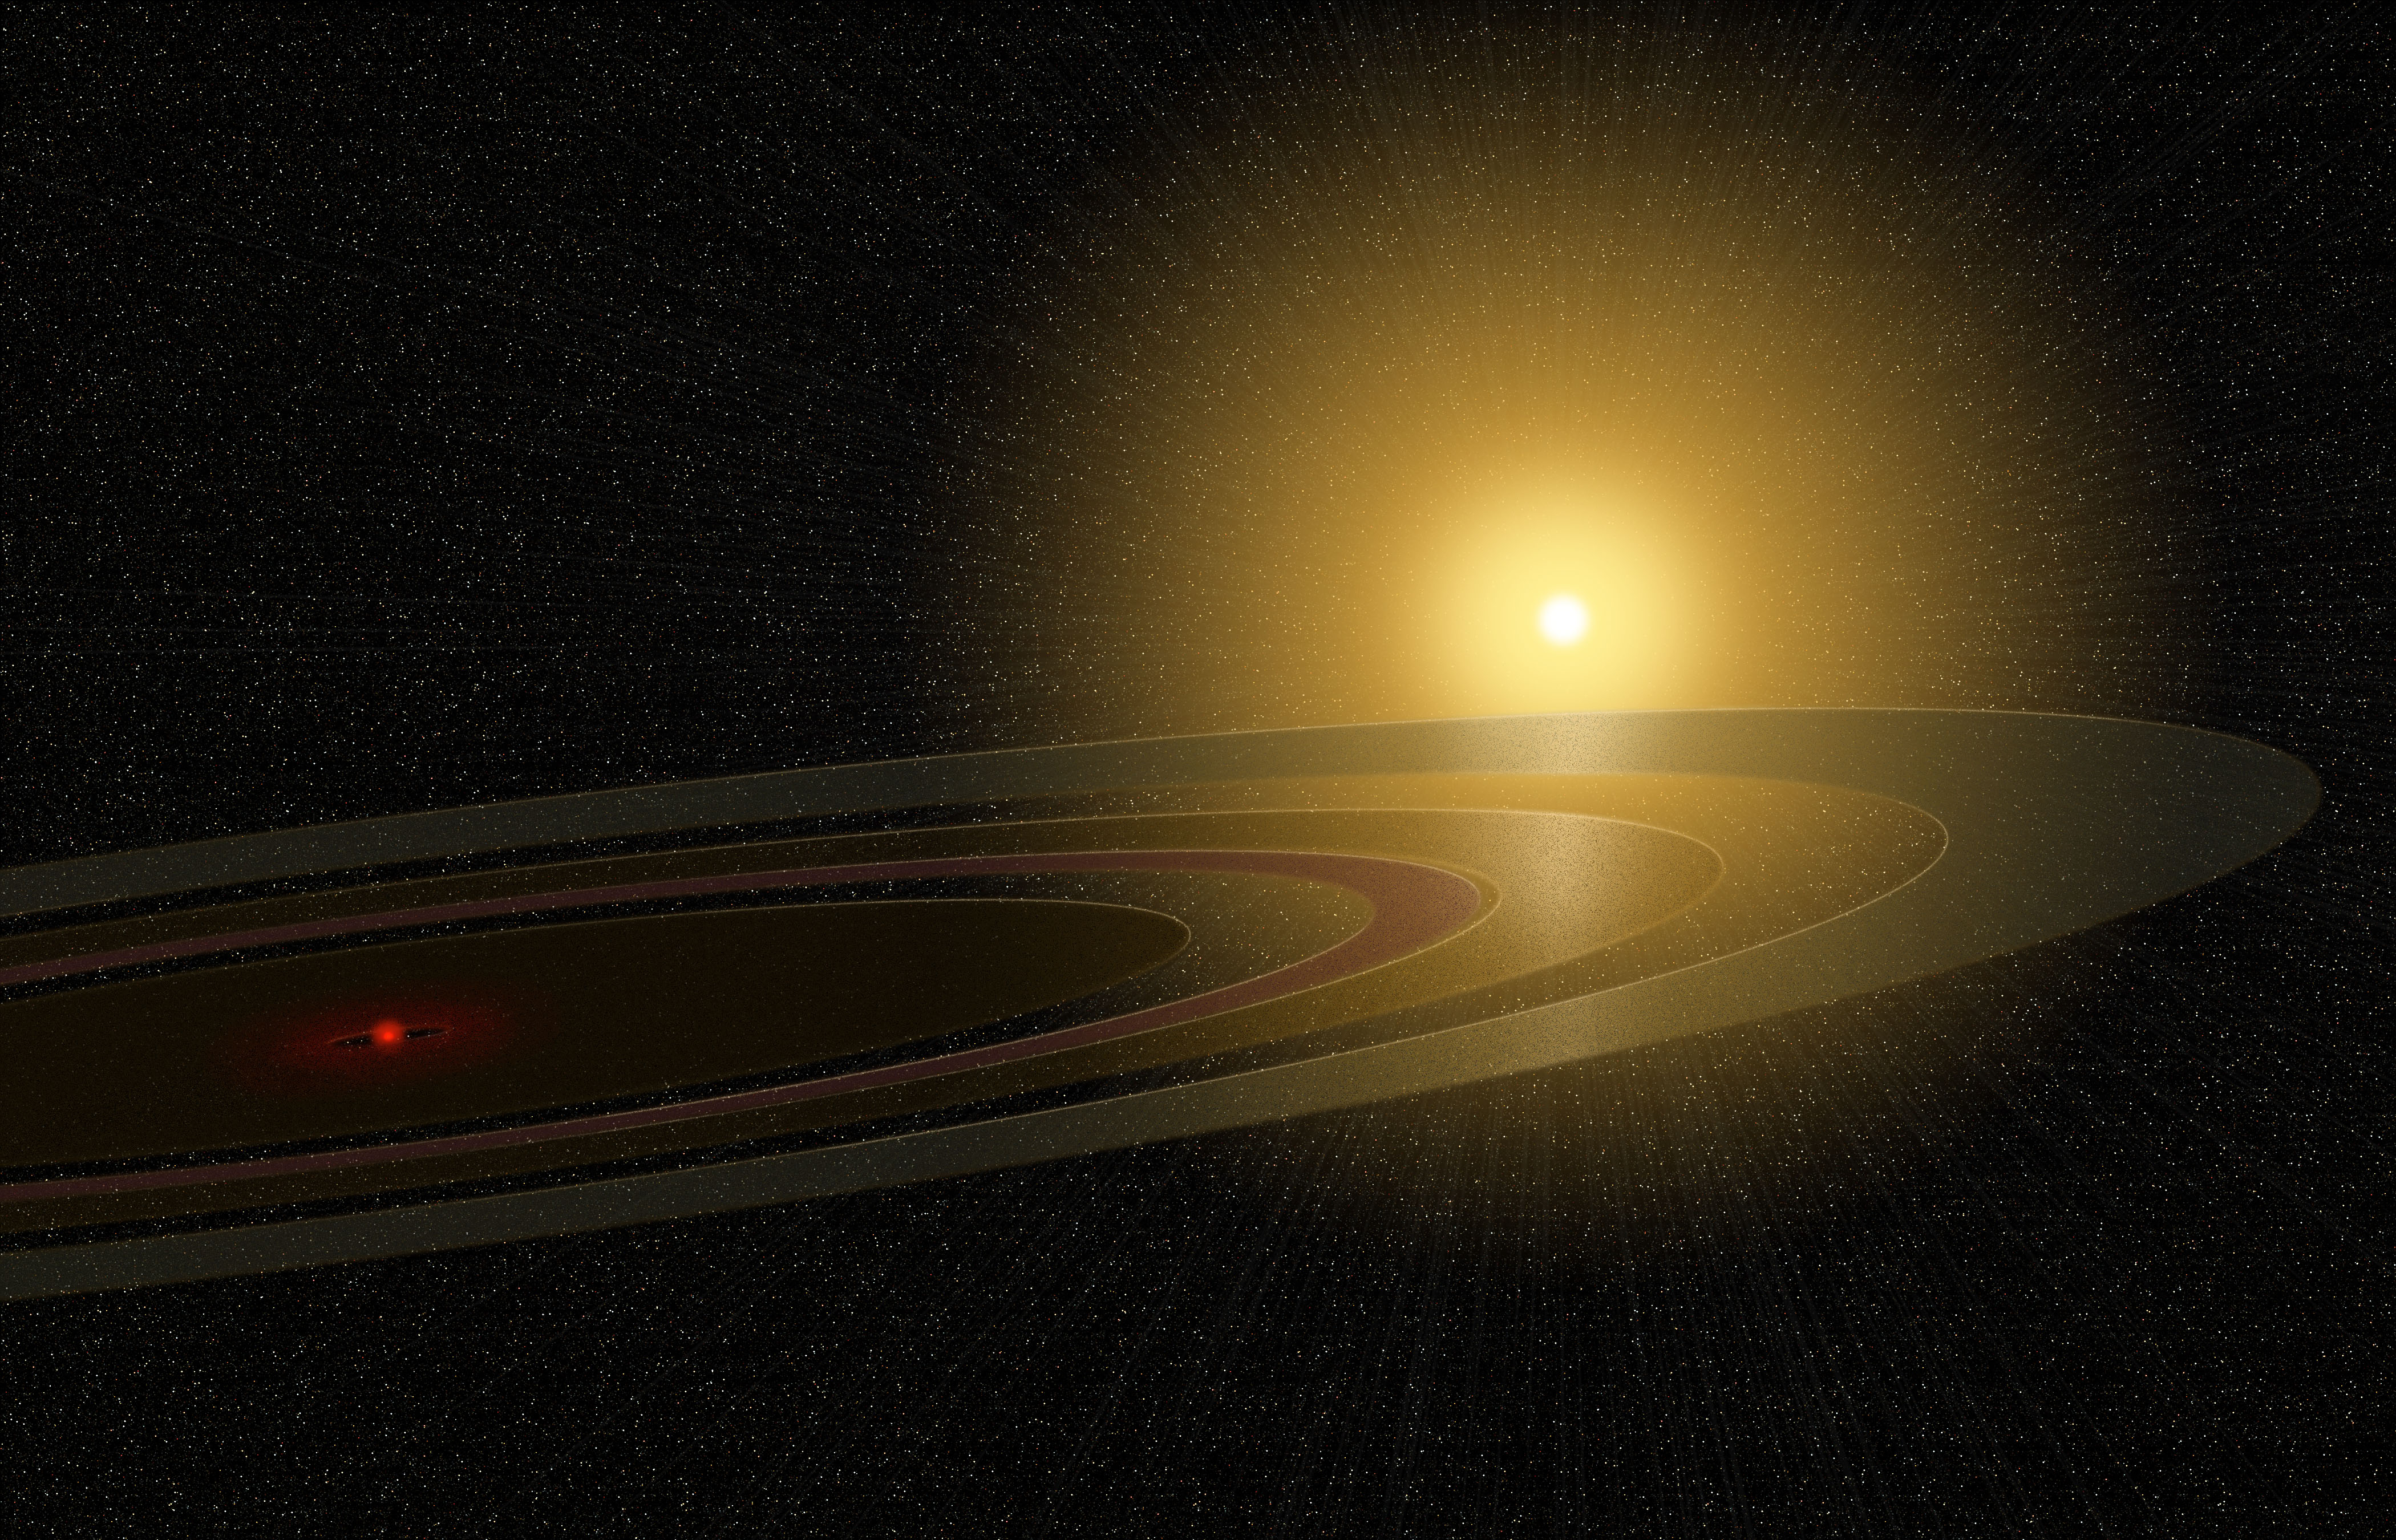 Самая большая система солнечной системы сатурн. Супер Сатурн j1407b. Кольца планеты j1407b. Планета j1407b и Сатурн. 1swasp j1407 b.